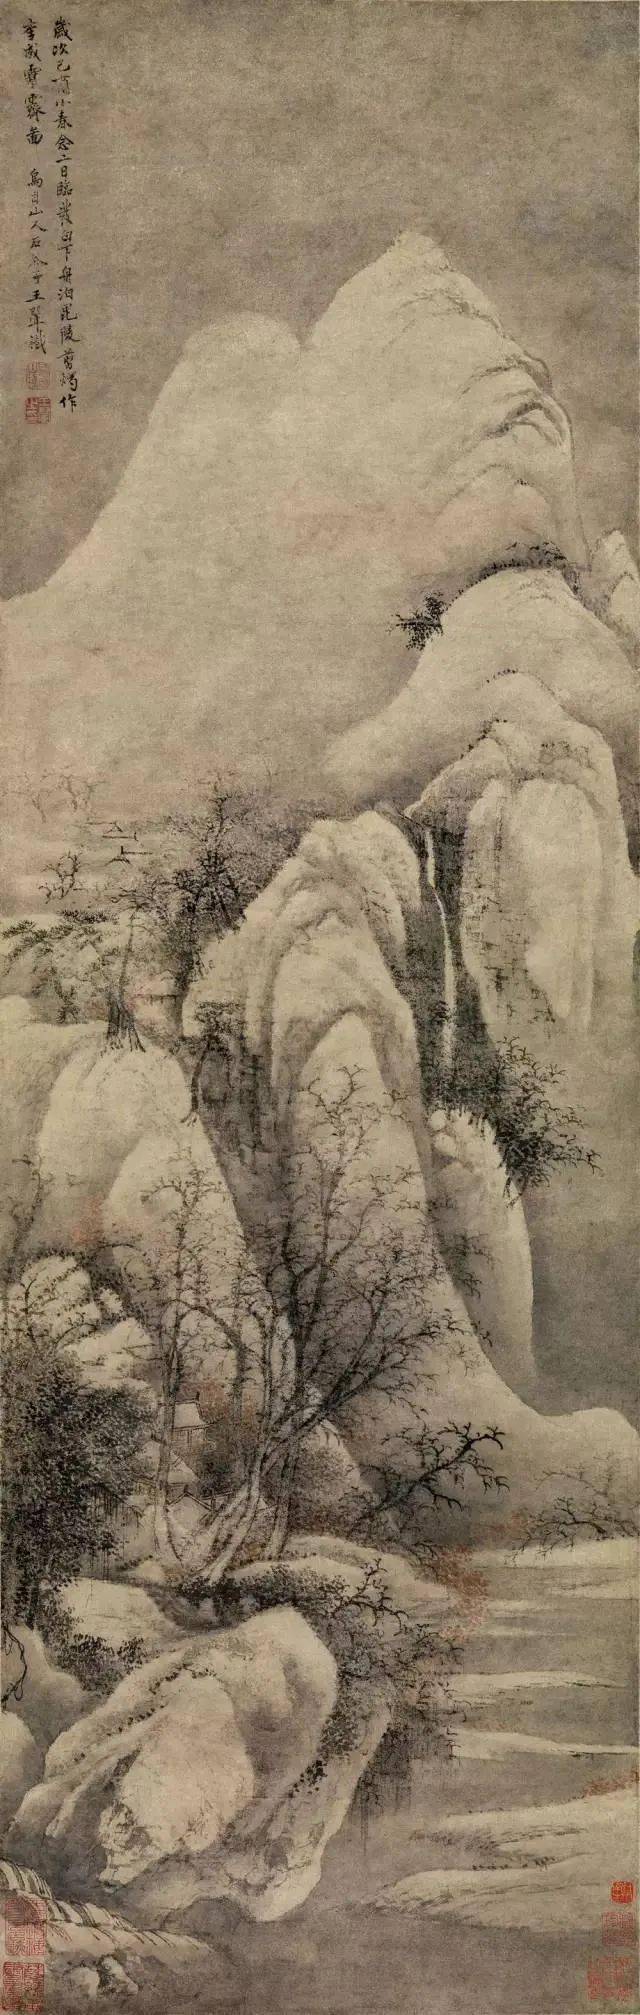 「仿王维江山雪霁图」作于戊申(1668)画家时年七十七岁.